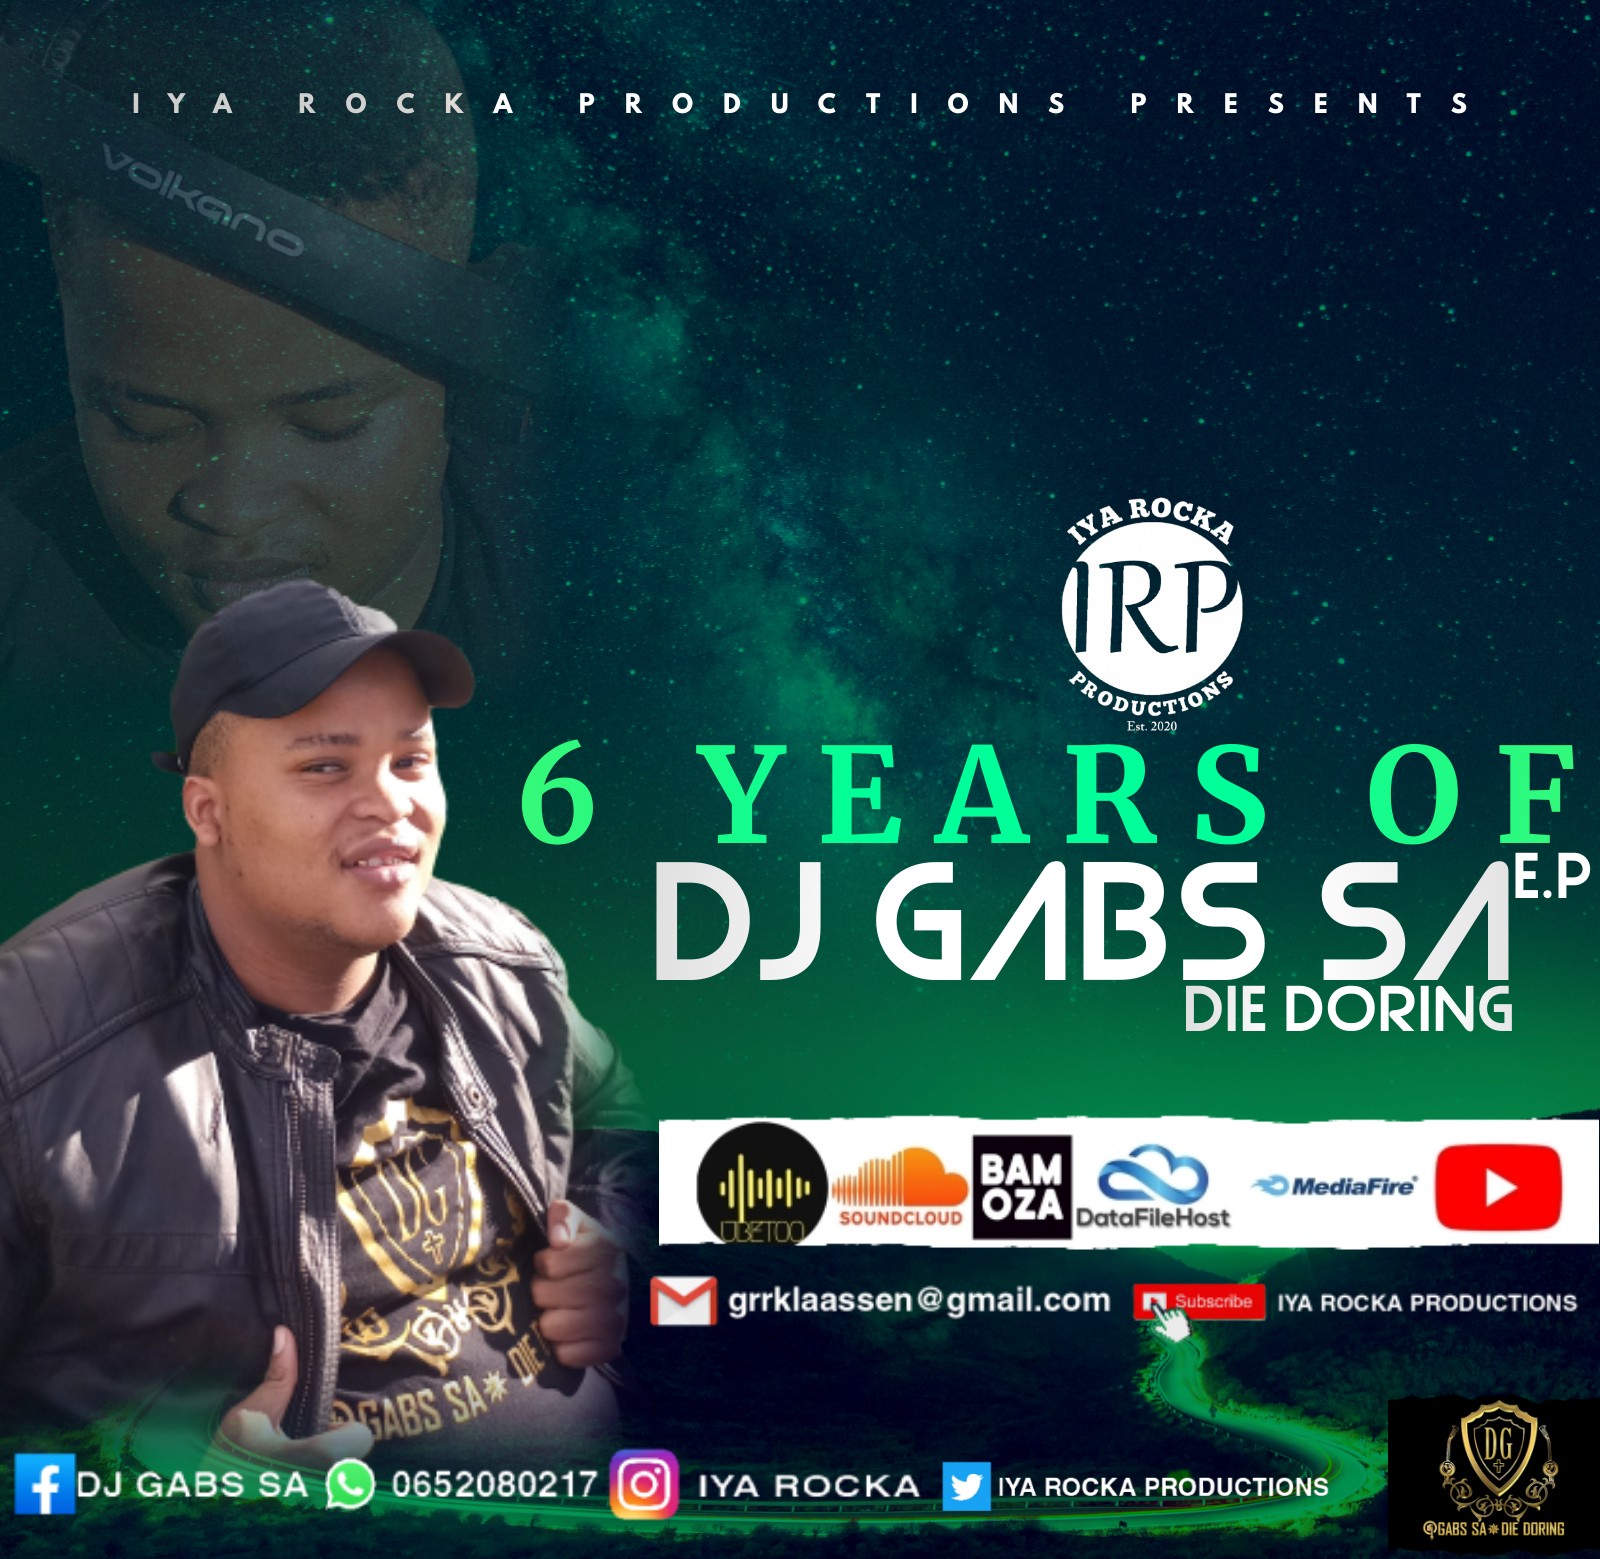 6 YEARS OF DJ GABS SA - DJ GABS SA DIE DORING